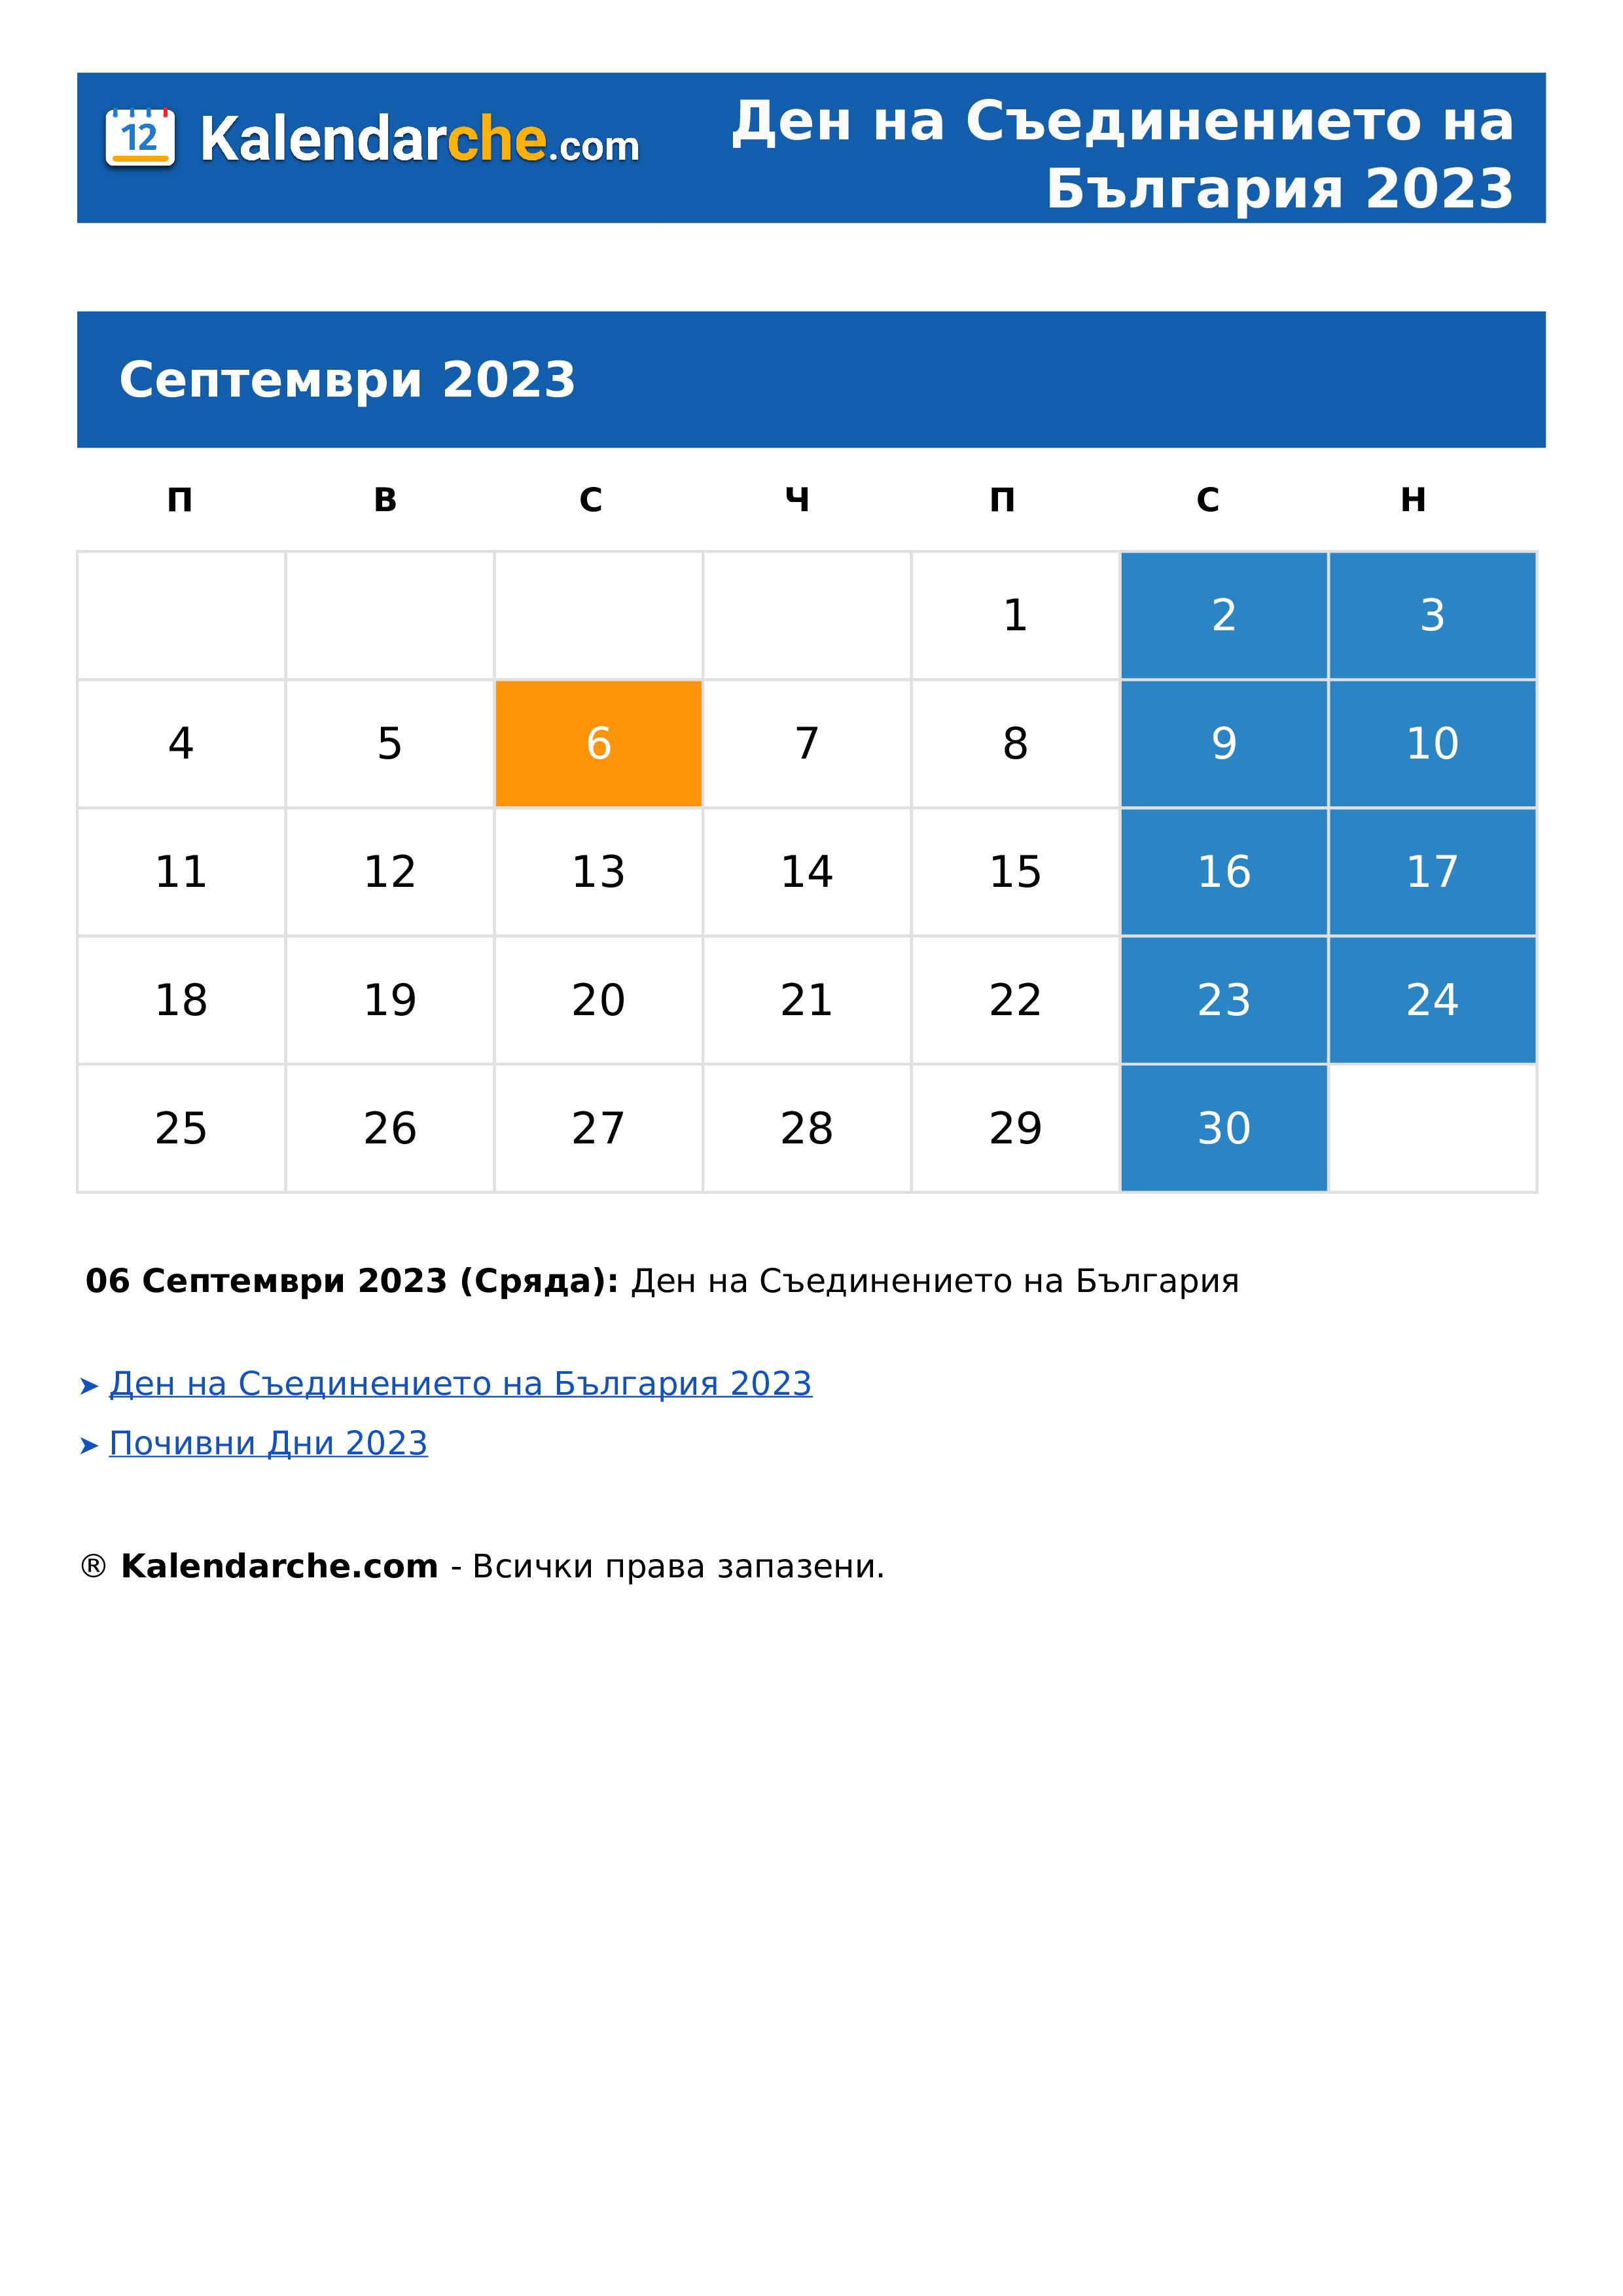 Ден на Съединението на България 2023